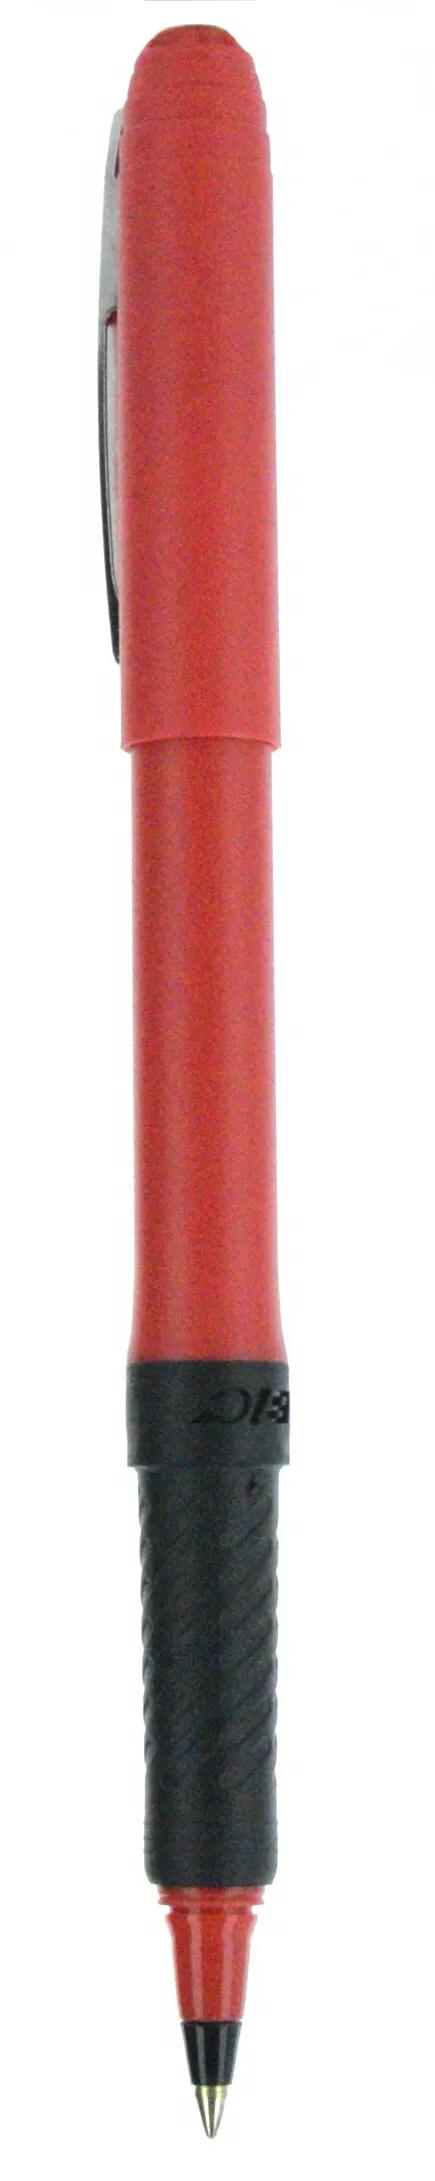 BIC® Grip Roller Pen 63 of 147